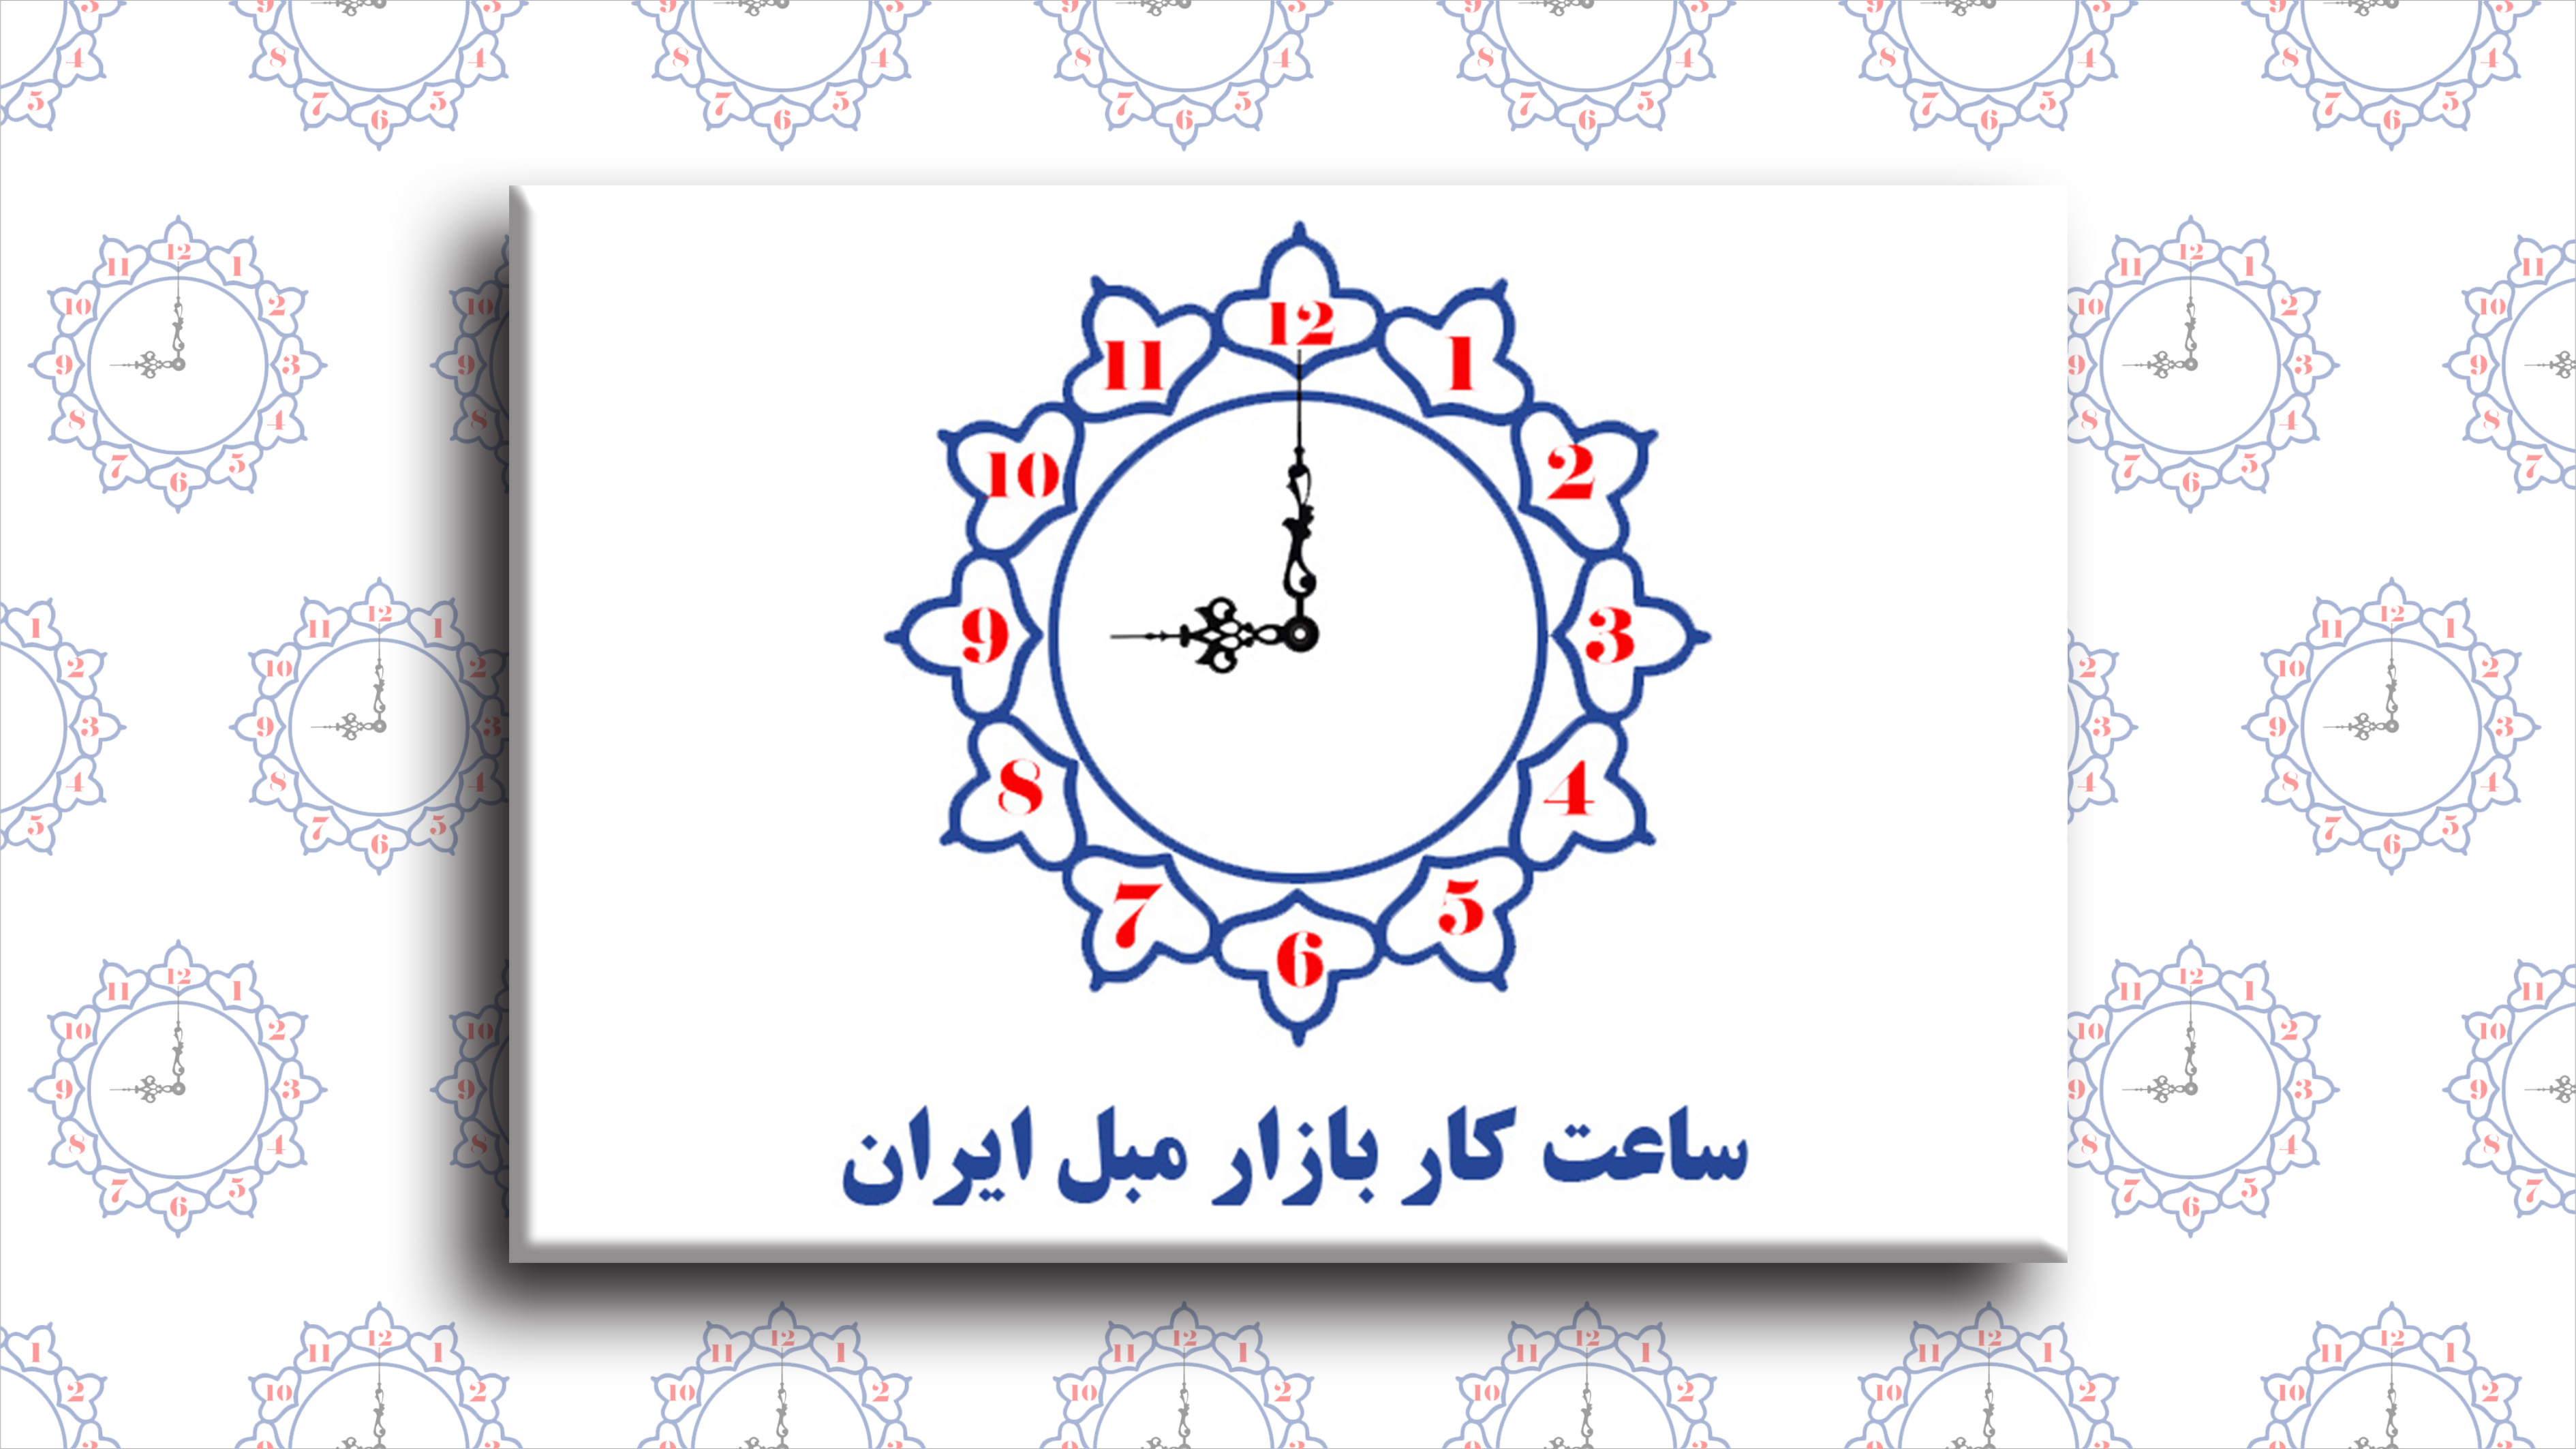 ساعت فعالیت بازار مبل ایران در روز 22 فروردین